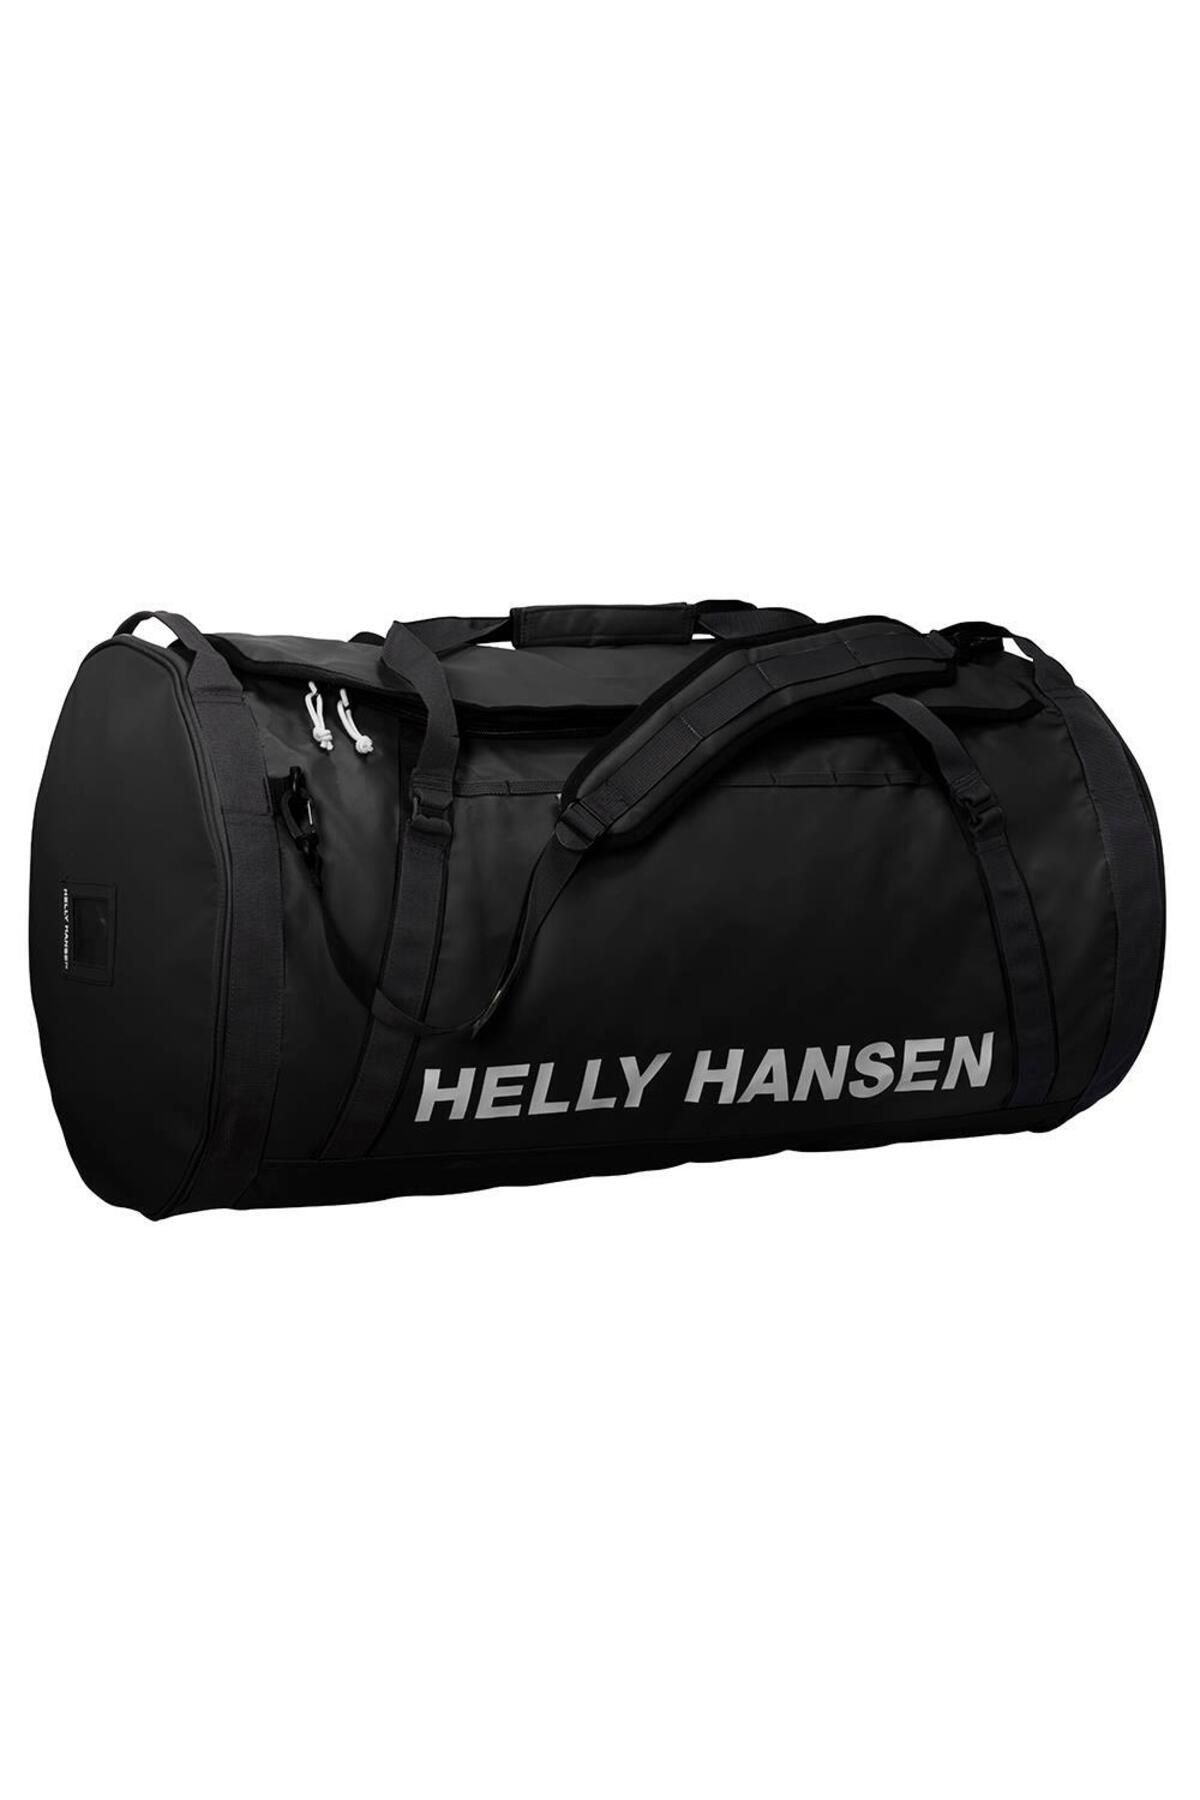 Helly Hansen Hh Hh Duffel Bag 2 70l